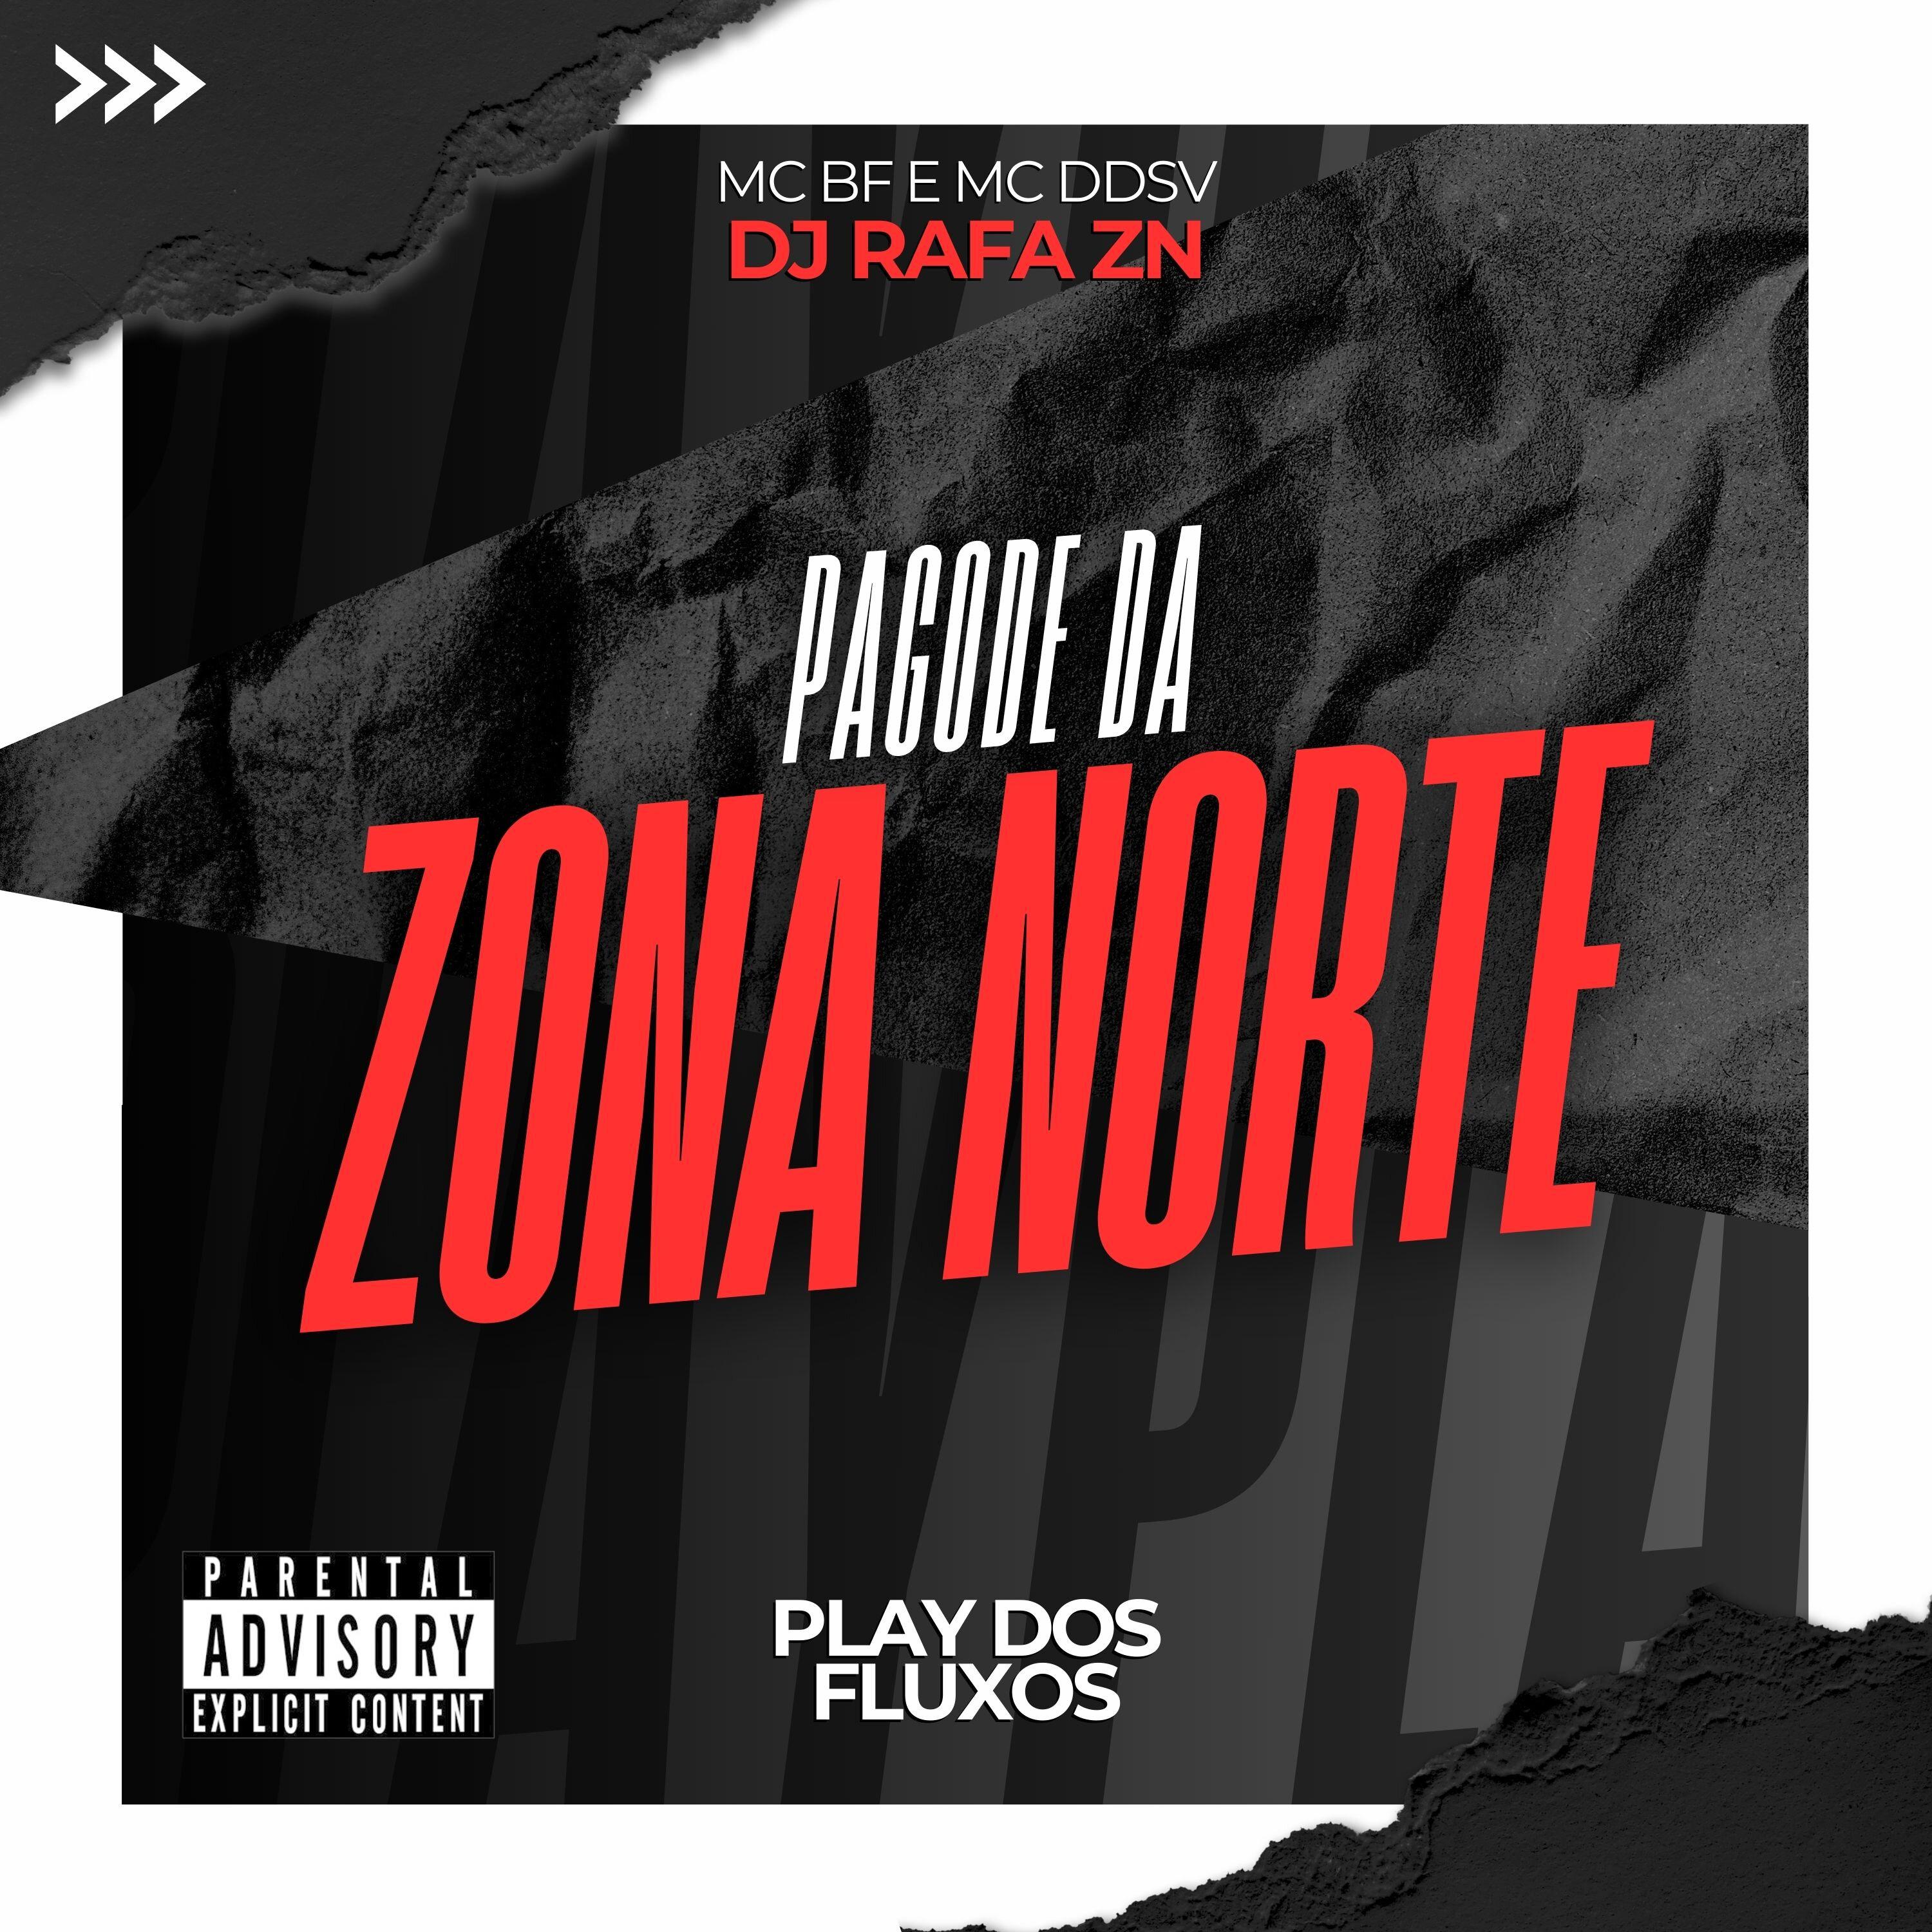 DJ Rafa ZN - Pagode da Zona Norte